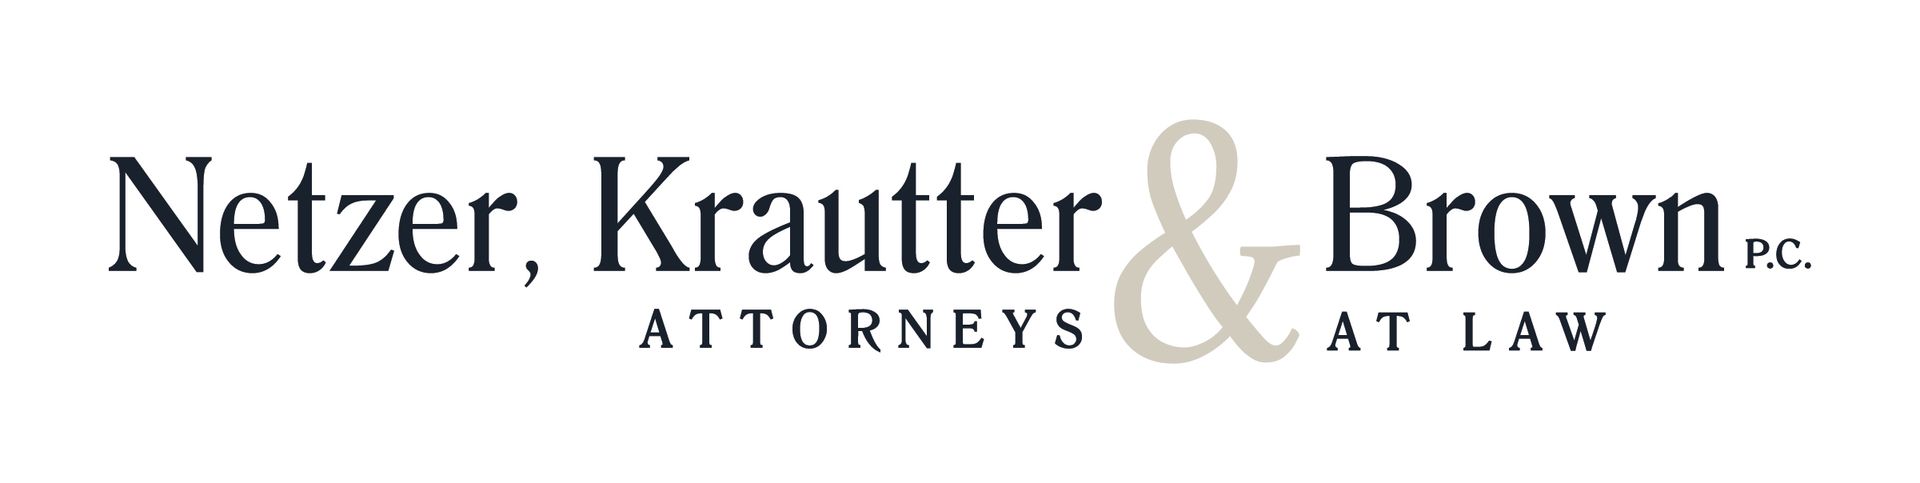 Netzer, Krautter, & Brown Attorney's at Law 